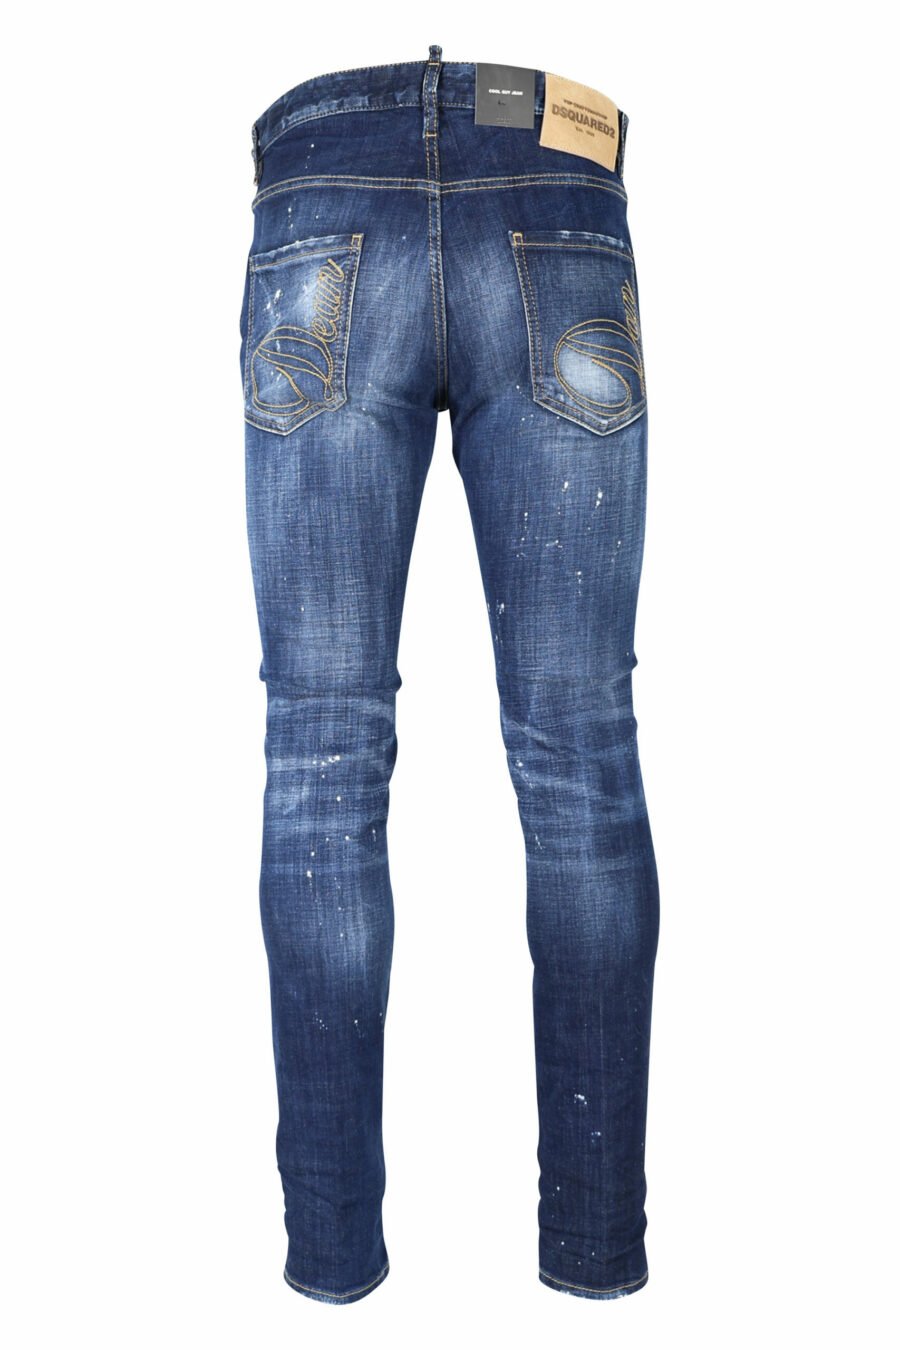 Blaue "cool guy jean" Jeans mit Farbe und ausgefranst - 8054148101688 2 skaliert